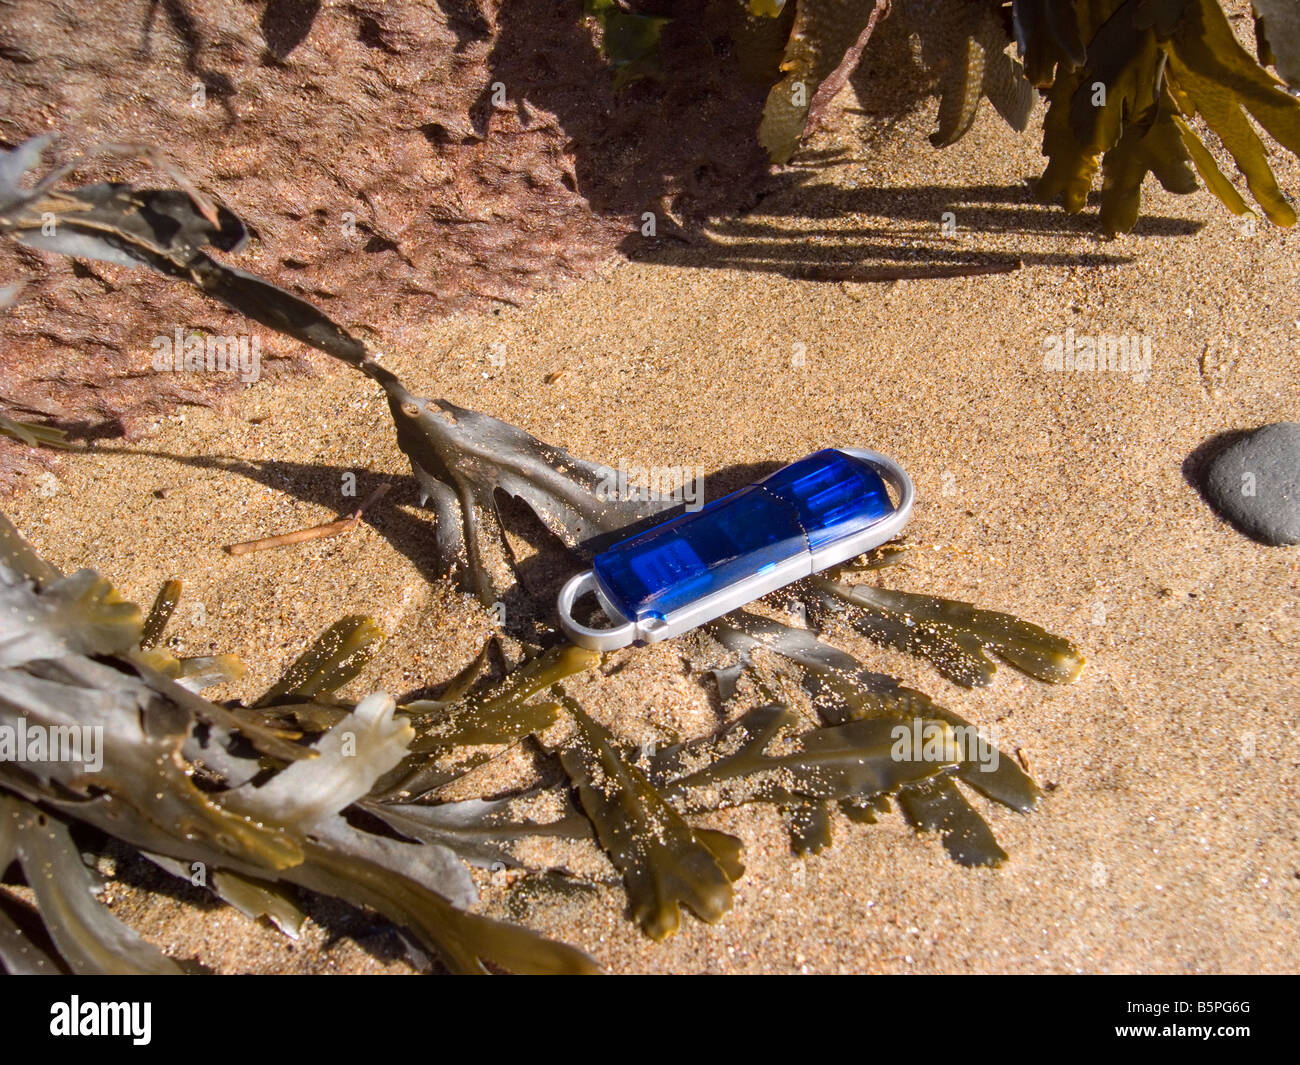 Un ordinateur numérique memory stick perdu sur une plage de sable fin avec des algues Banque D'Images